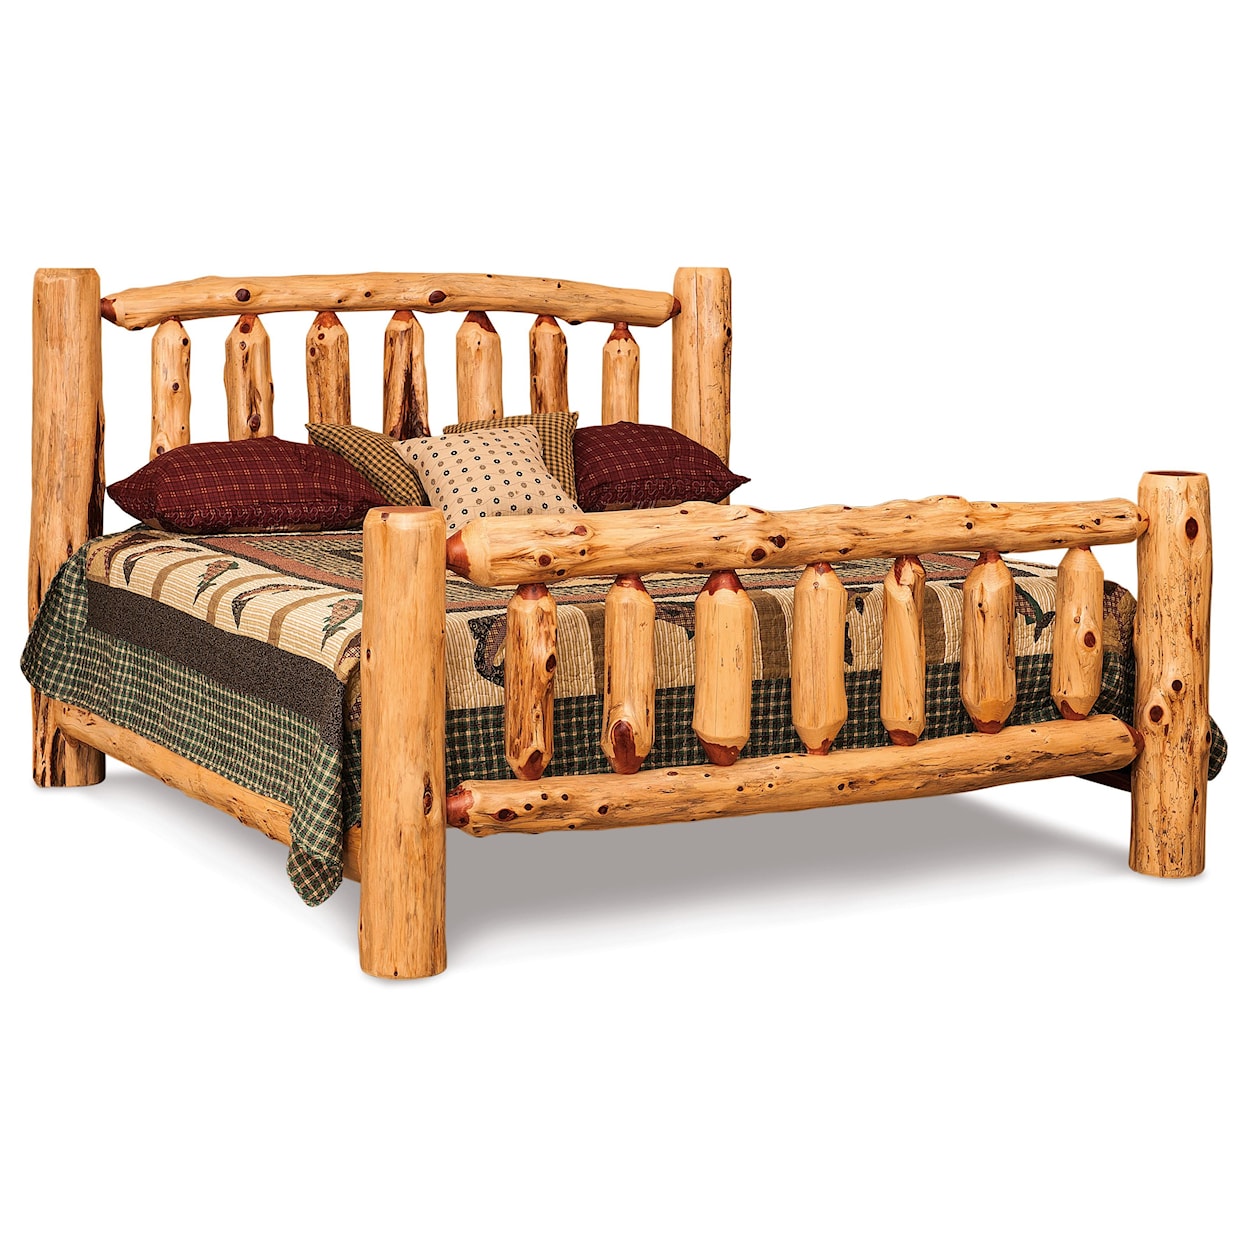 Fireside Log Furniture Log Bedroom King Log Bed